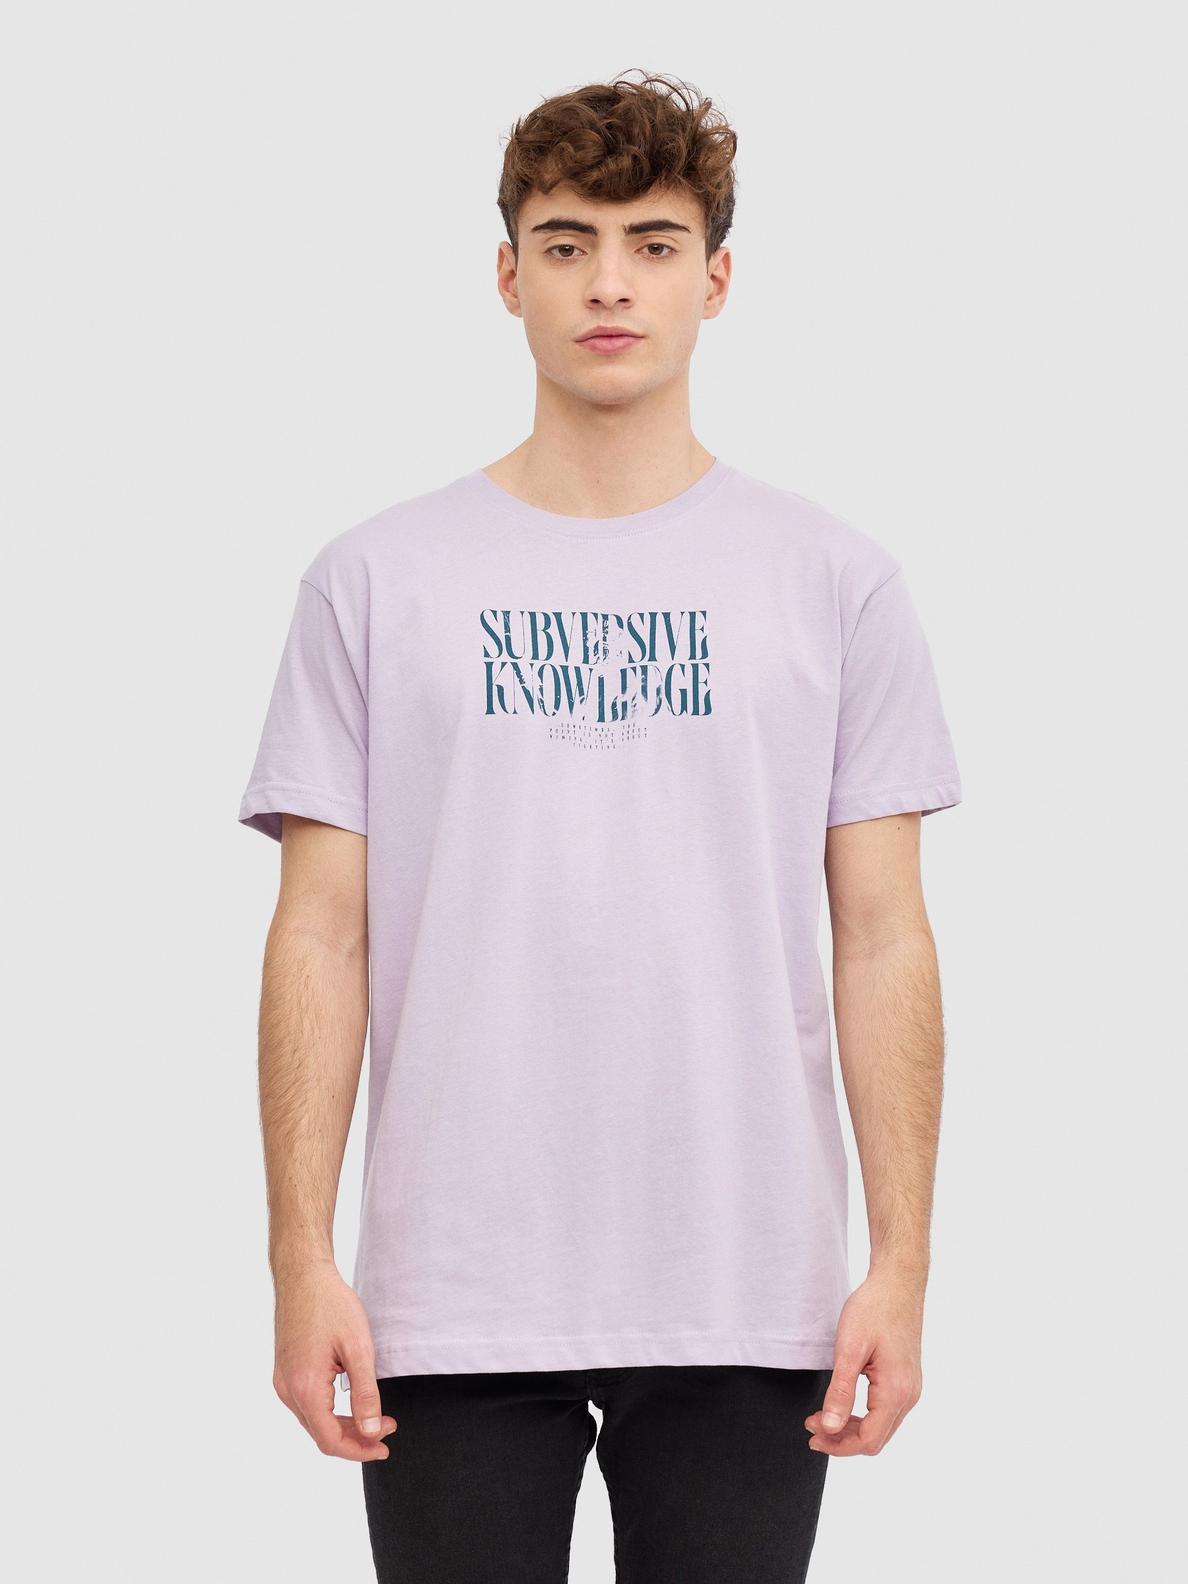 Oferta de Camiseta texto minimalista por 7,99€ en Inside